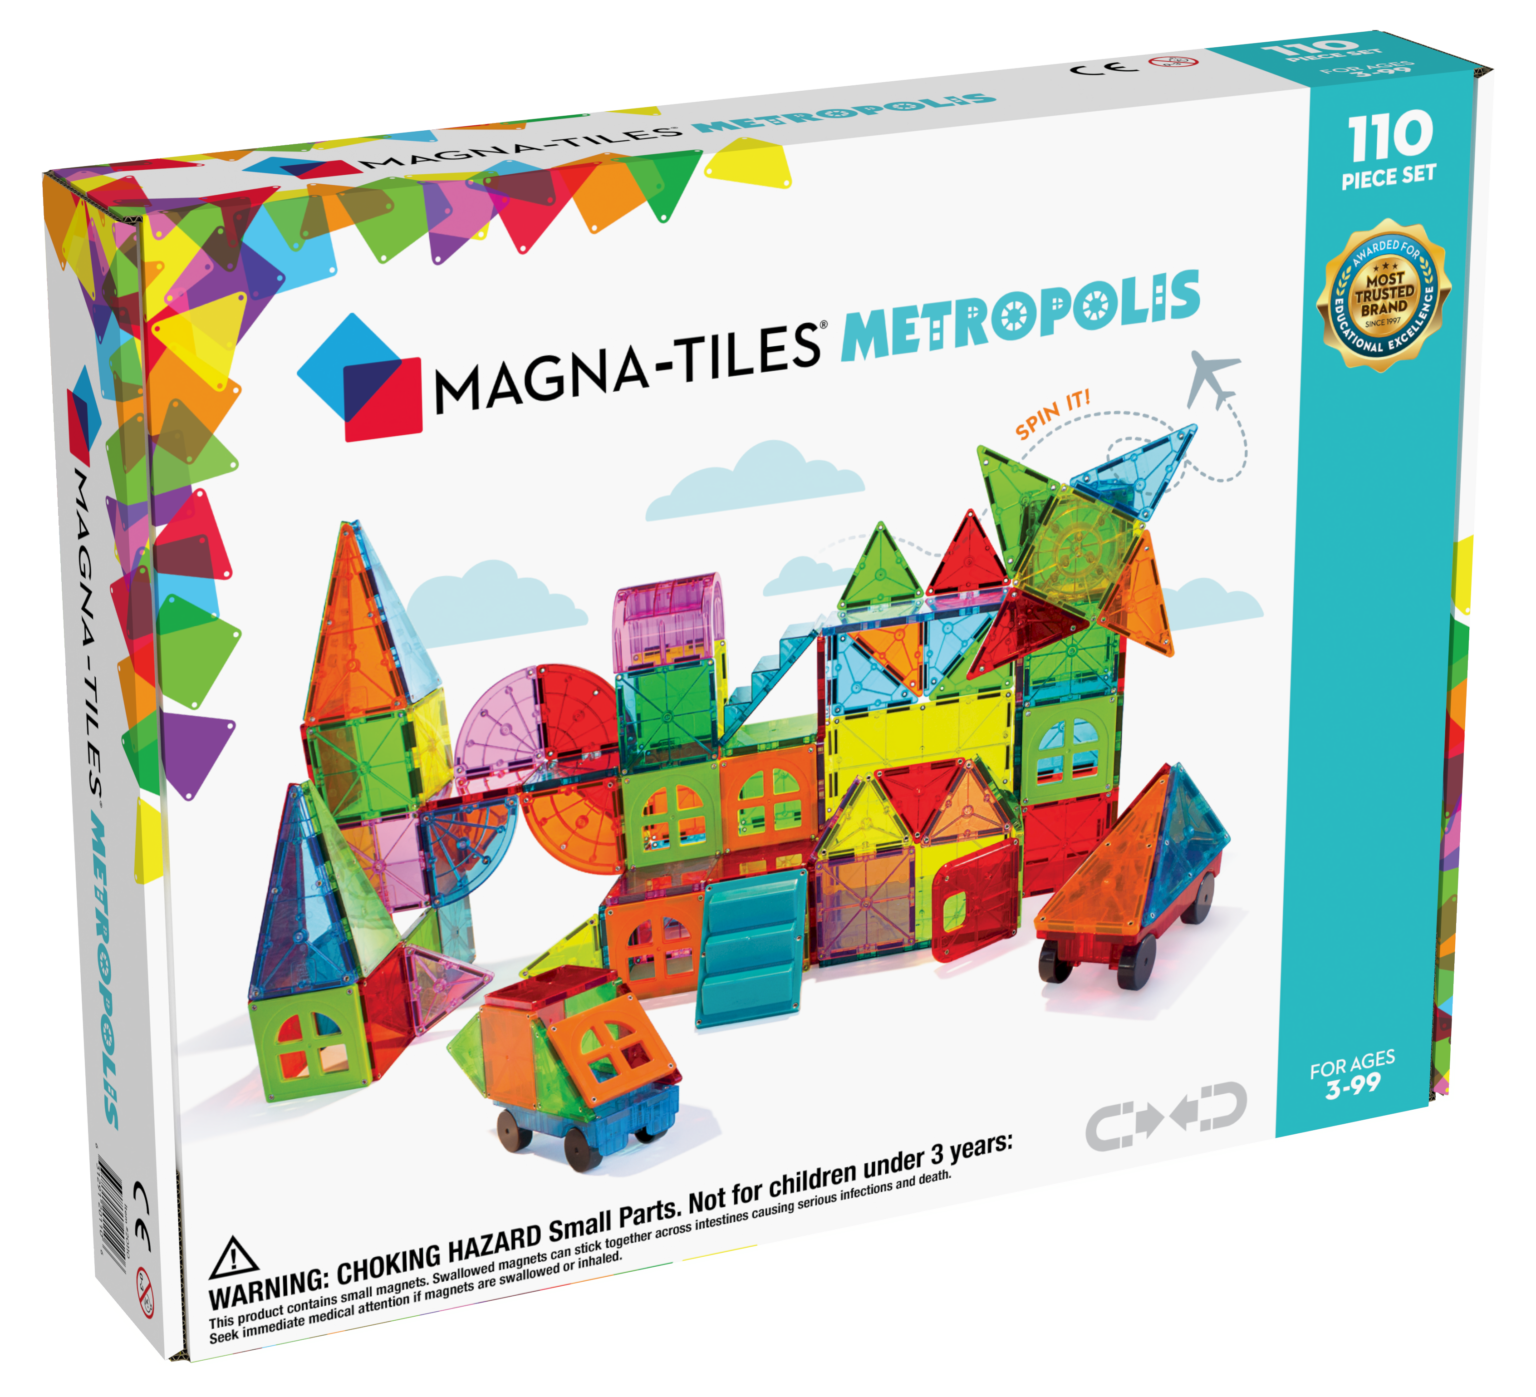 Magna-Tiles Metropolis XL 110 Piece Piece Set #20110